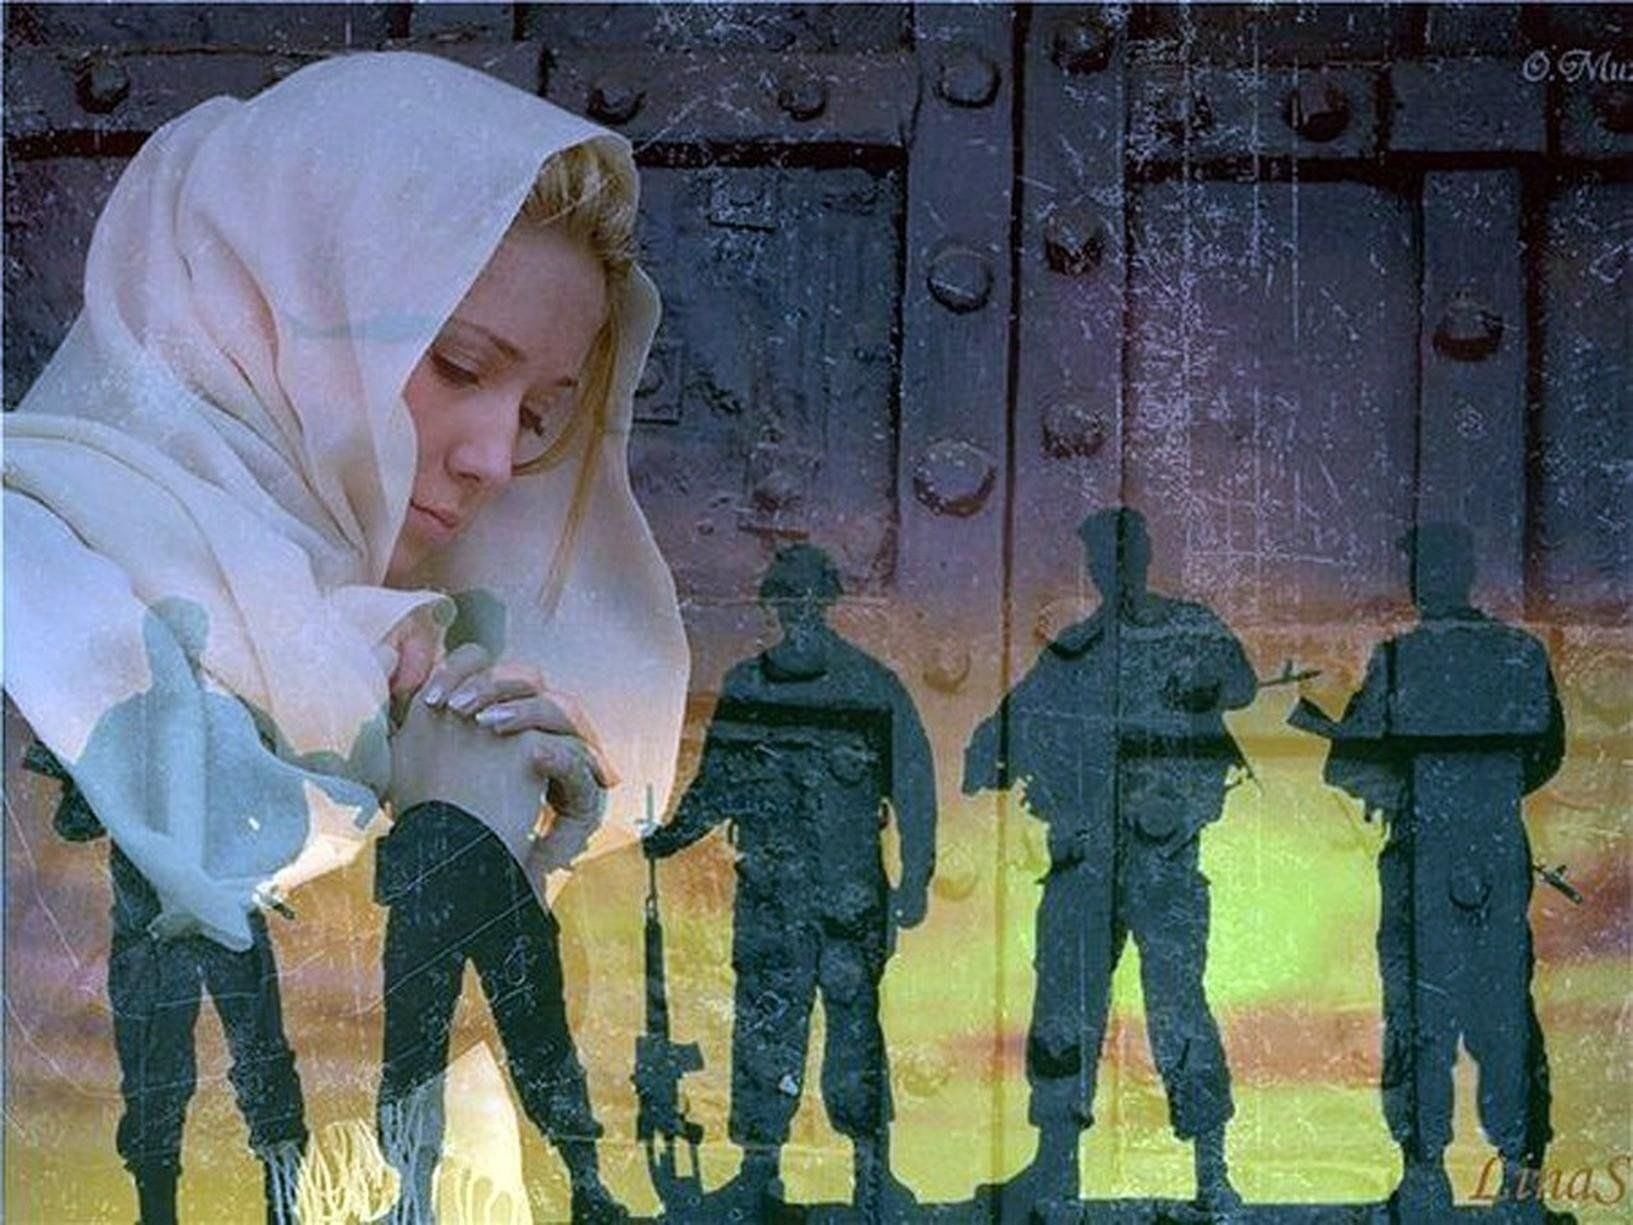 Господь сохранит песня. Мать ждет солдата. Солдатские матери. Мать провожает сына. Солдат молится.